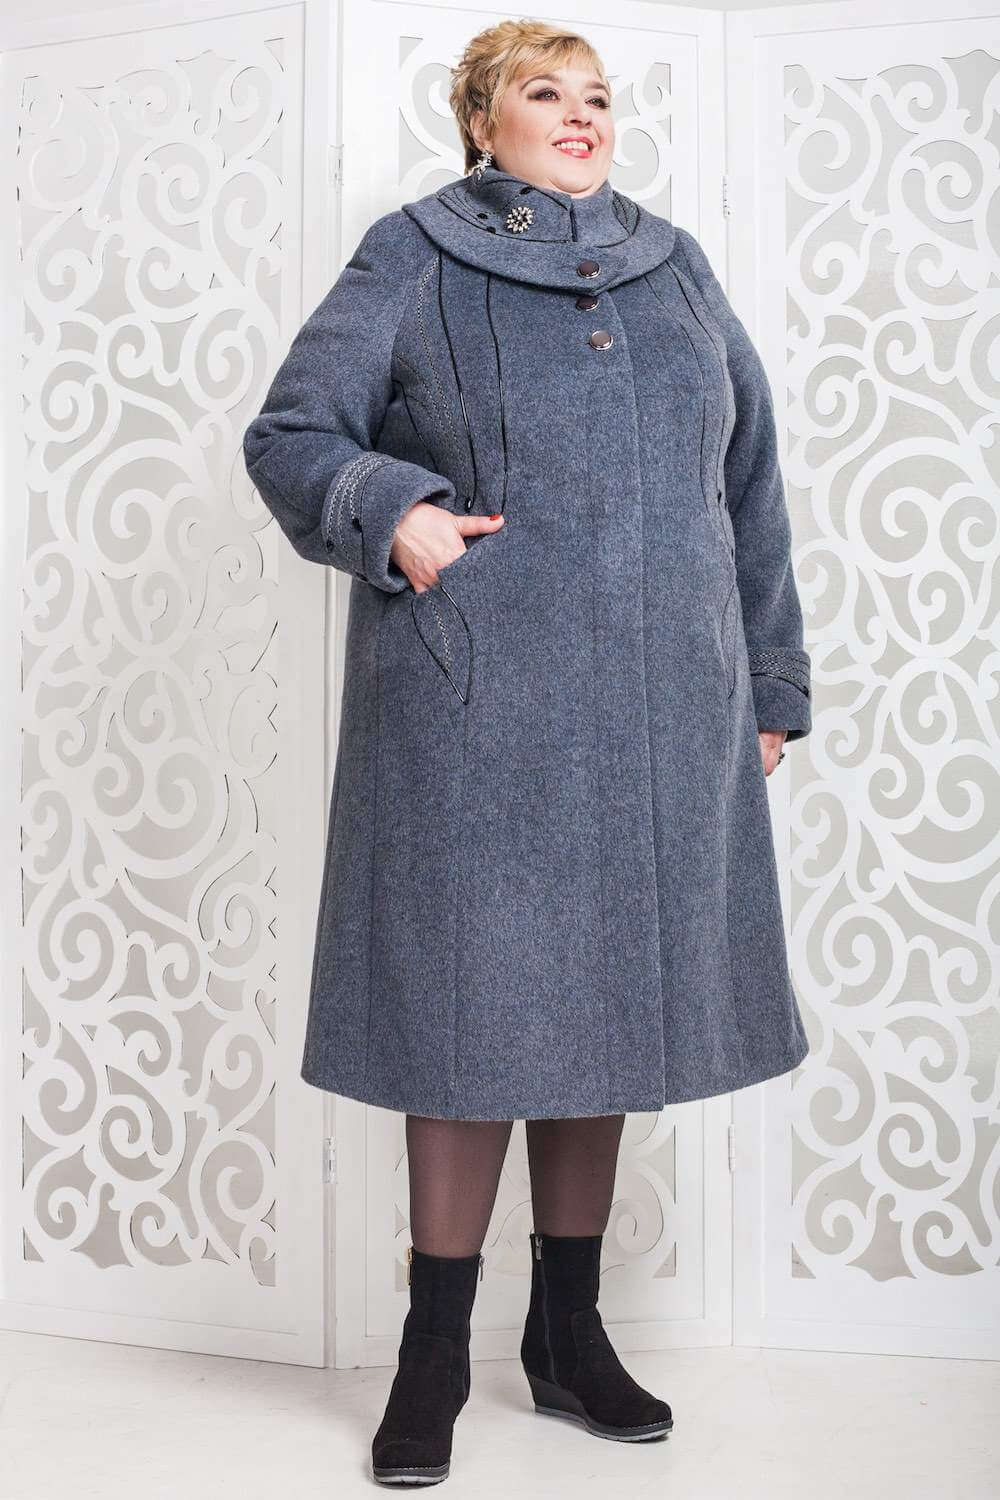 Зимнее пальто для полных женщин с расклешенным подолом - Блог/Фаворитти